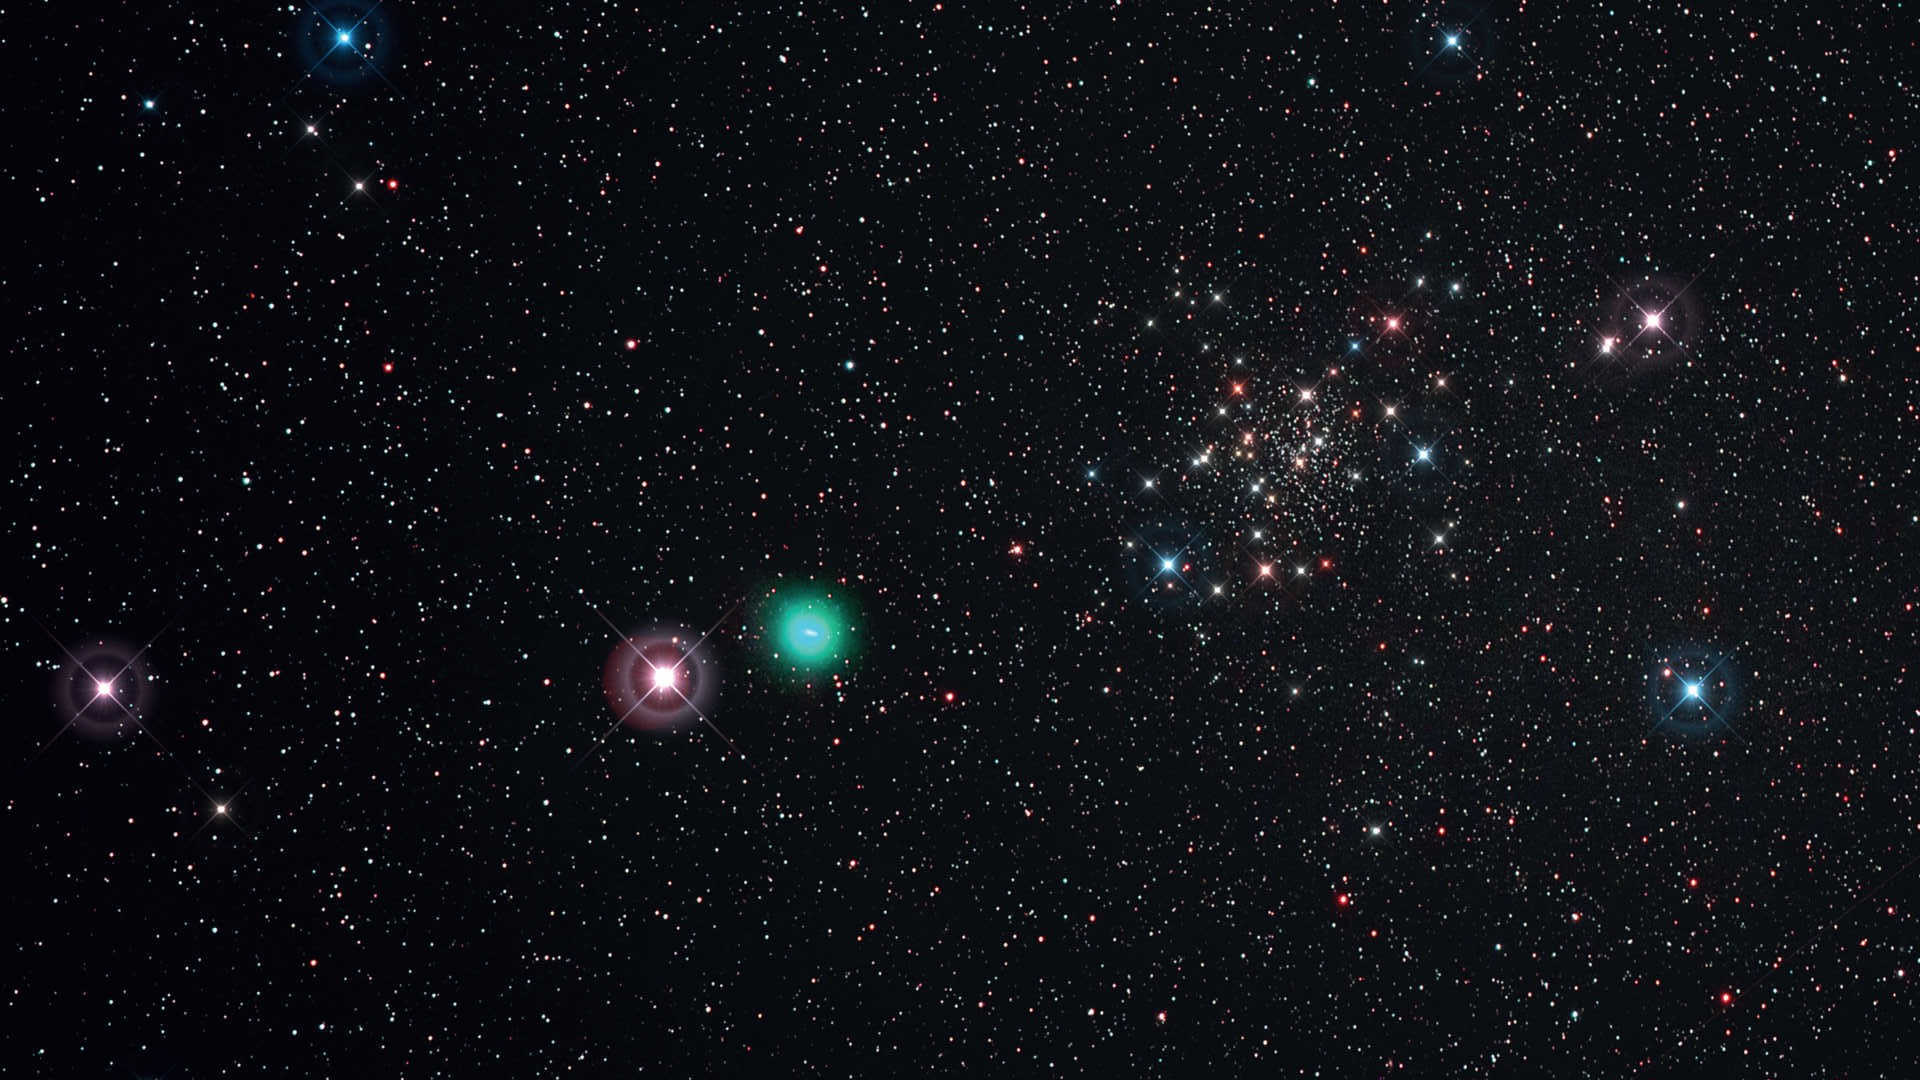 Fotografering av kometer. Utförande och bildbehandling